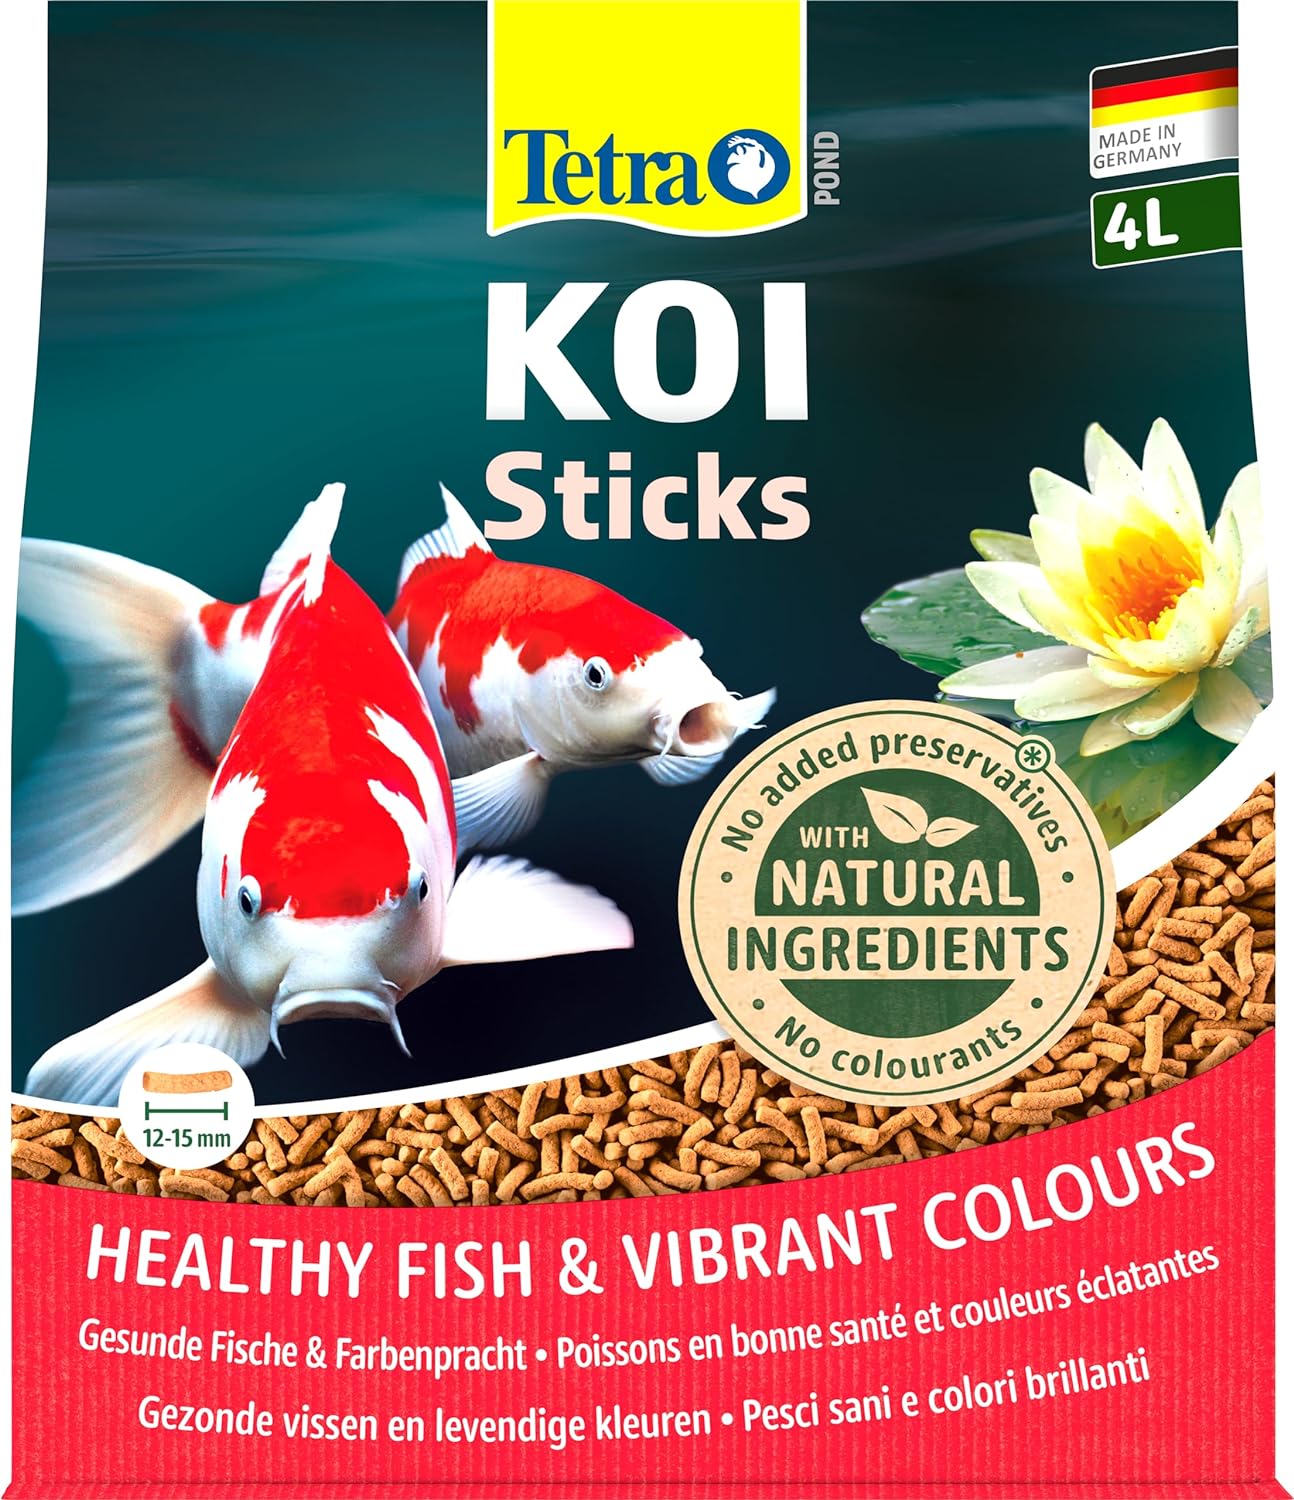 tetra-pond-koi-sticks-4l-aliment-complet-en-sticks-pour-carpes-koi-de-plus-de-25-cm